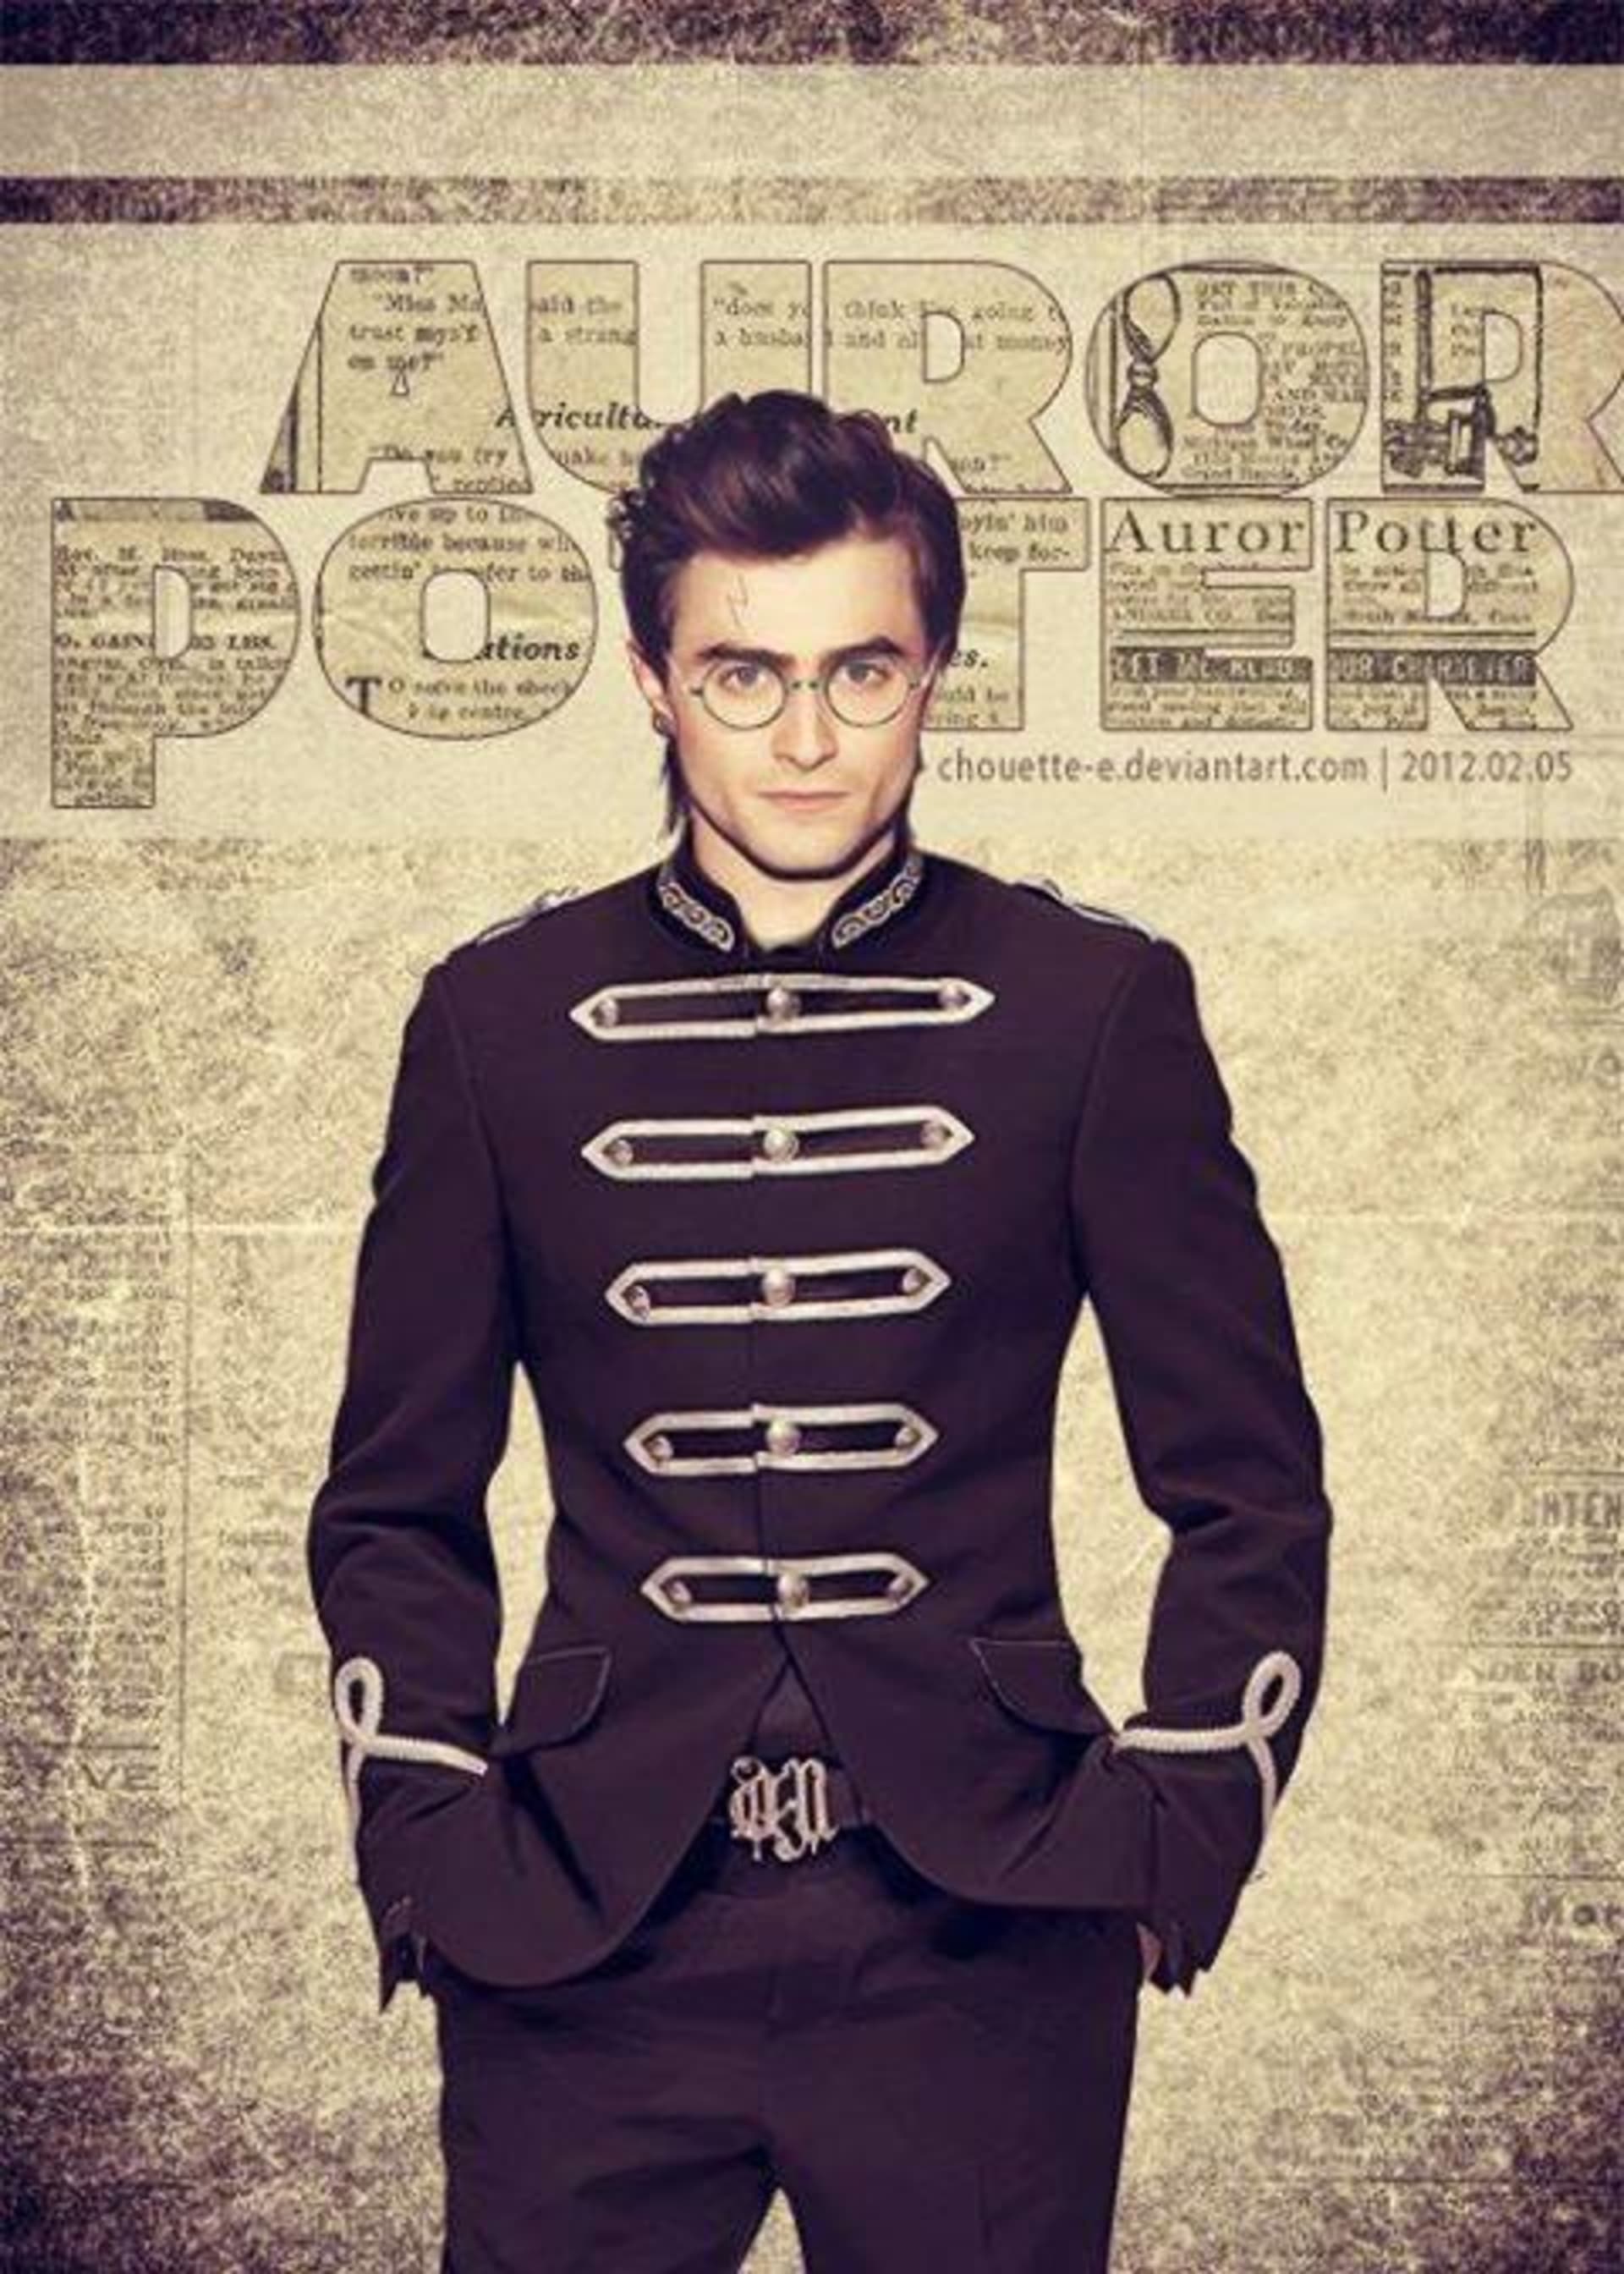 Daniel Radcliffe je navždy spjat s rolí Harryho Pottera